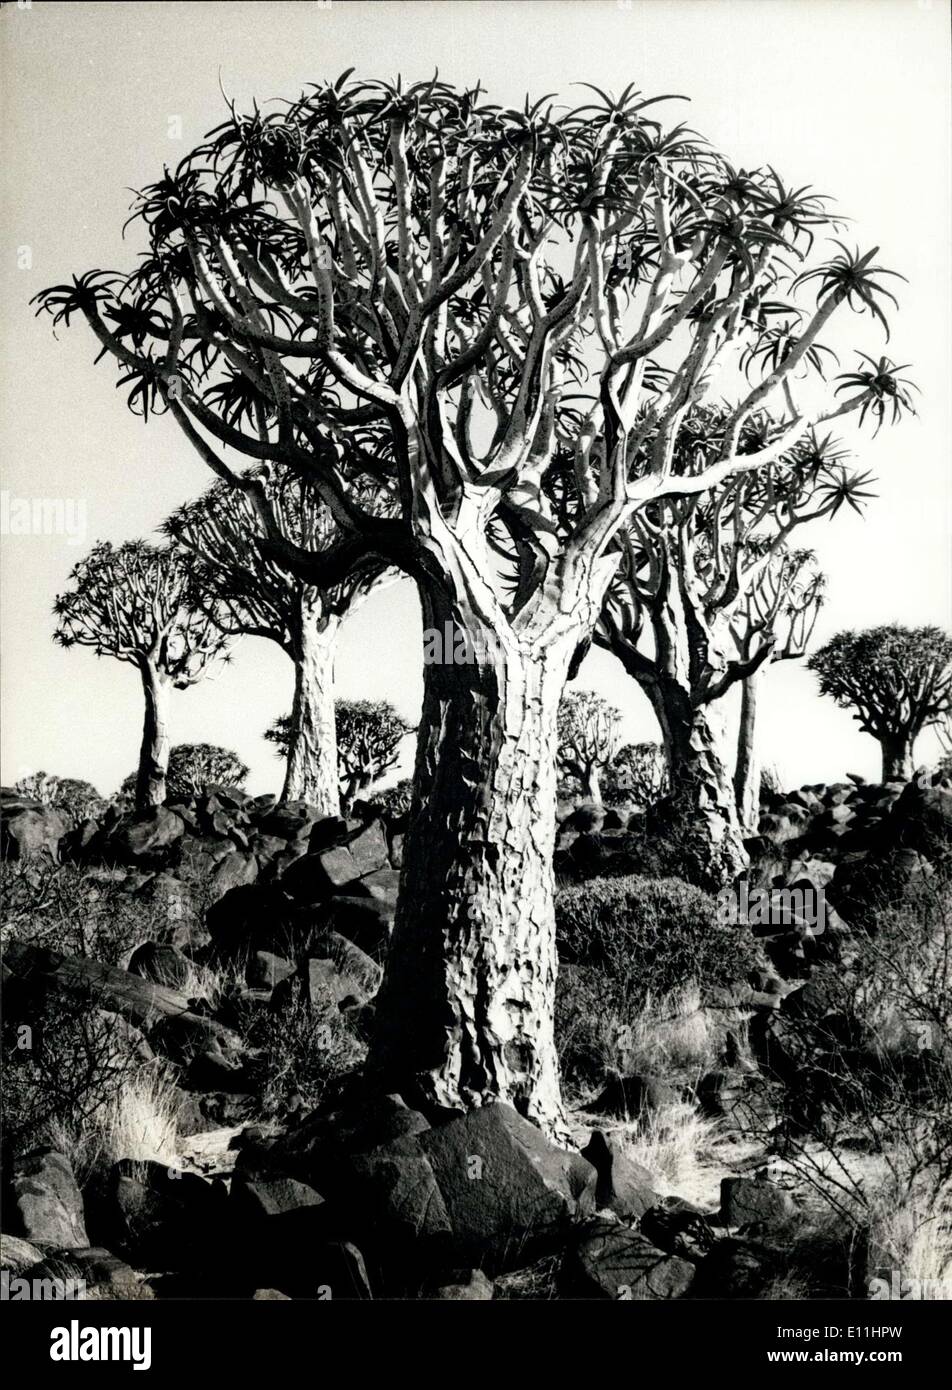 12. Juni 1978 - Koker-Bäume: eines der Wahrzeichen des südlichen Afrikas Koker-Bäume sind eines der Wahrzeichen des südlichen Afrika, Südafrika und Namibia zu. Sie sind eine Art von Aloe-Pflanze. Aus der Rinde bilden die schwarzen ihre Köcher. OPS: Koker-Bäume im Namibia. Stockfoto